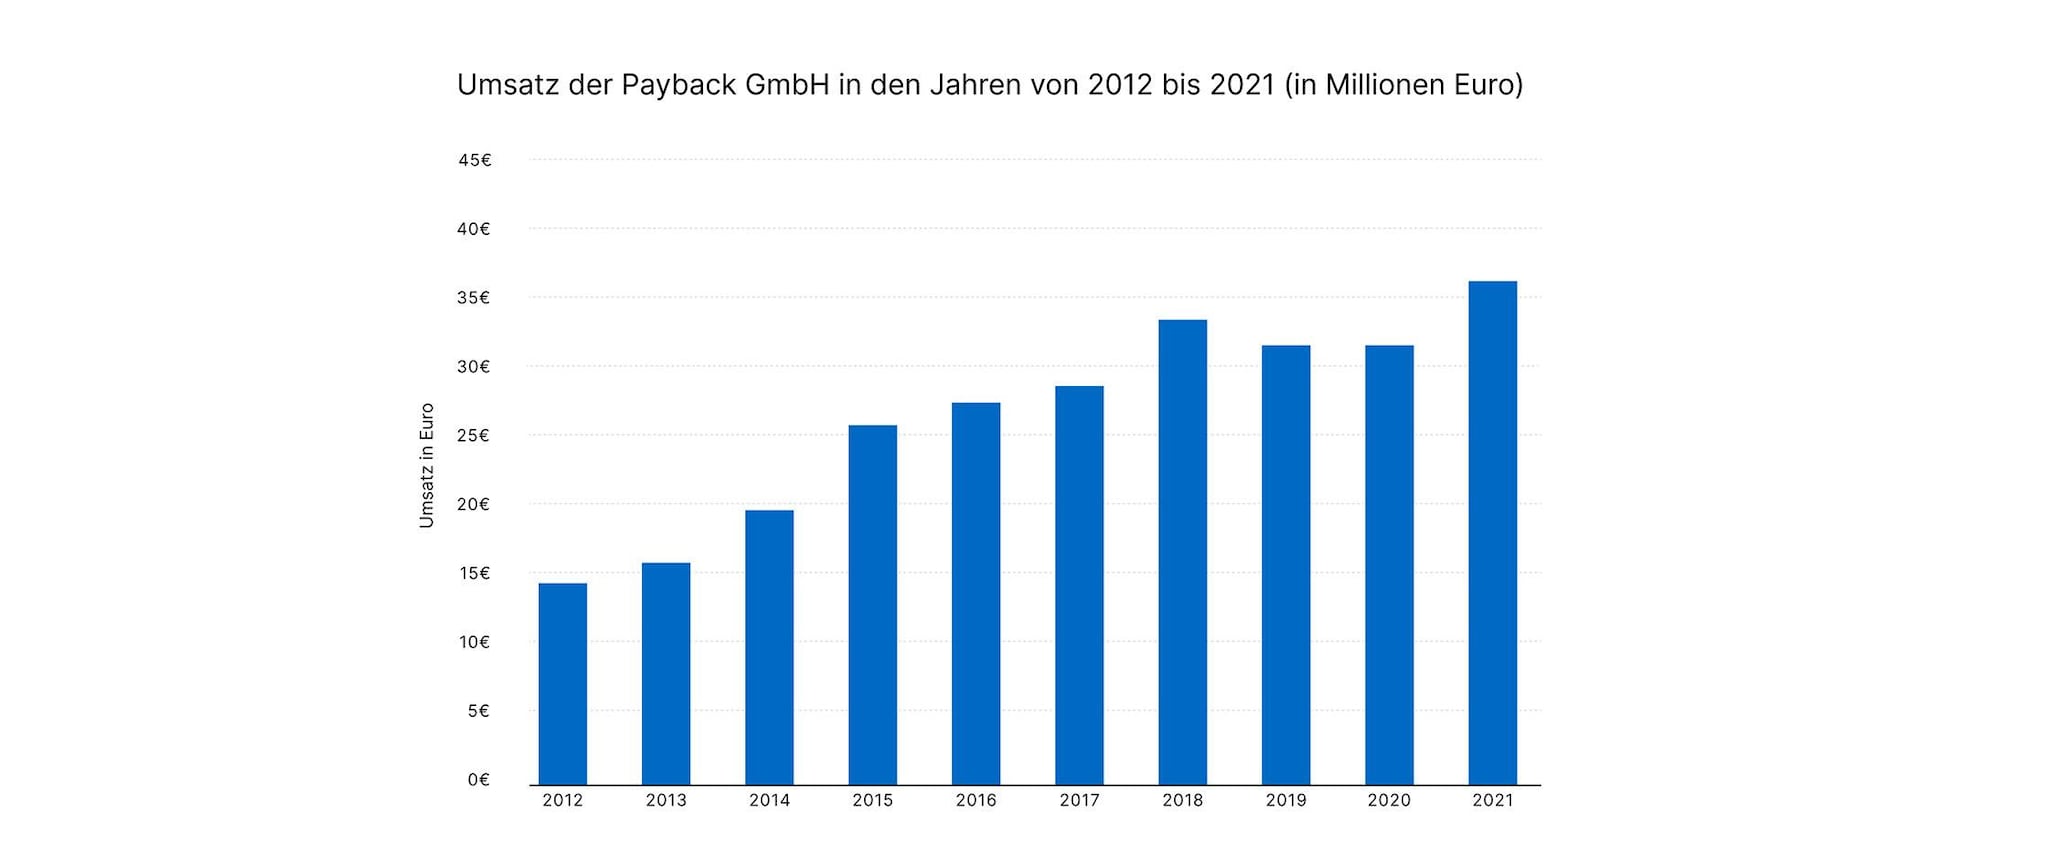 10046_2 Umsatz der Payback GmbH_936x2240